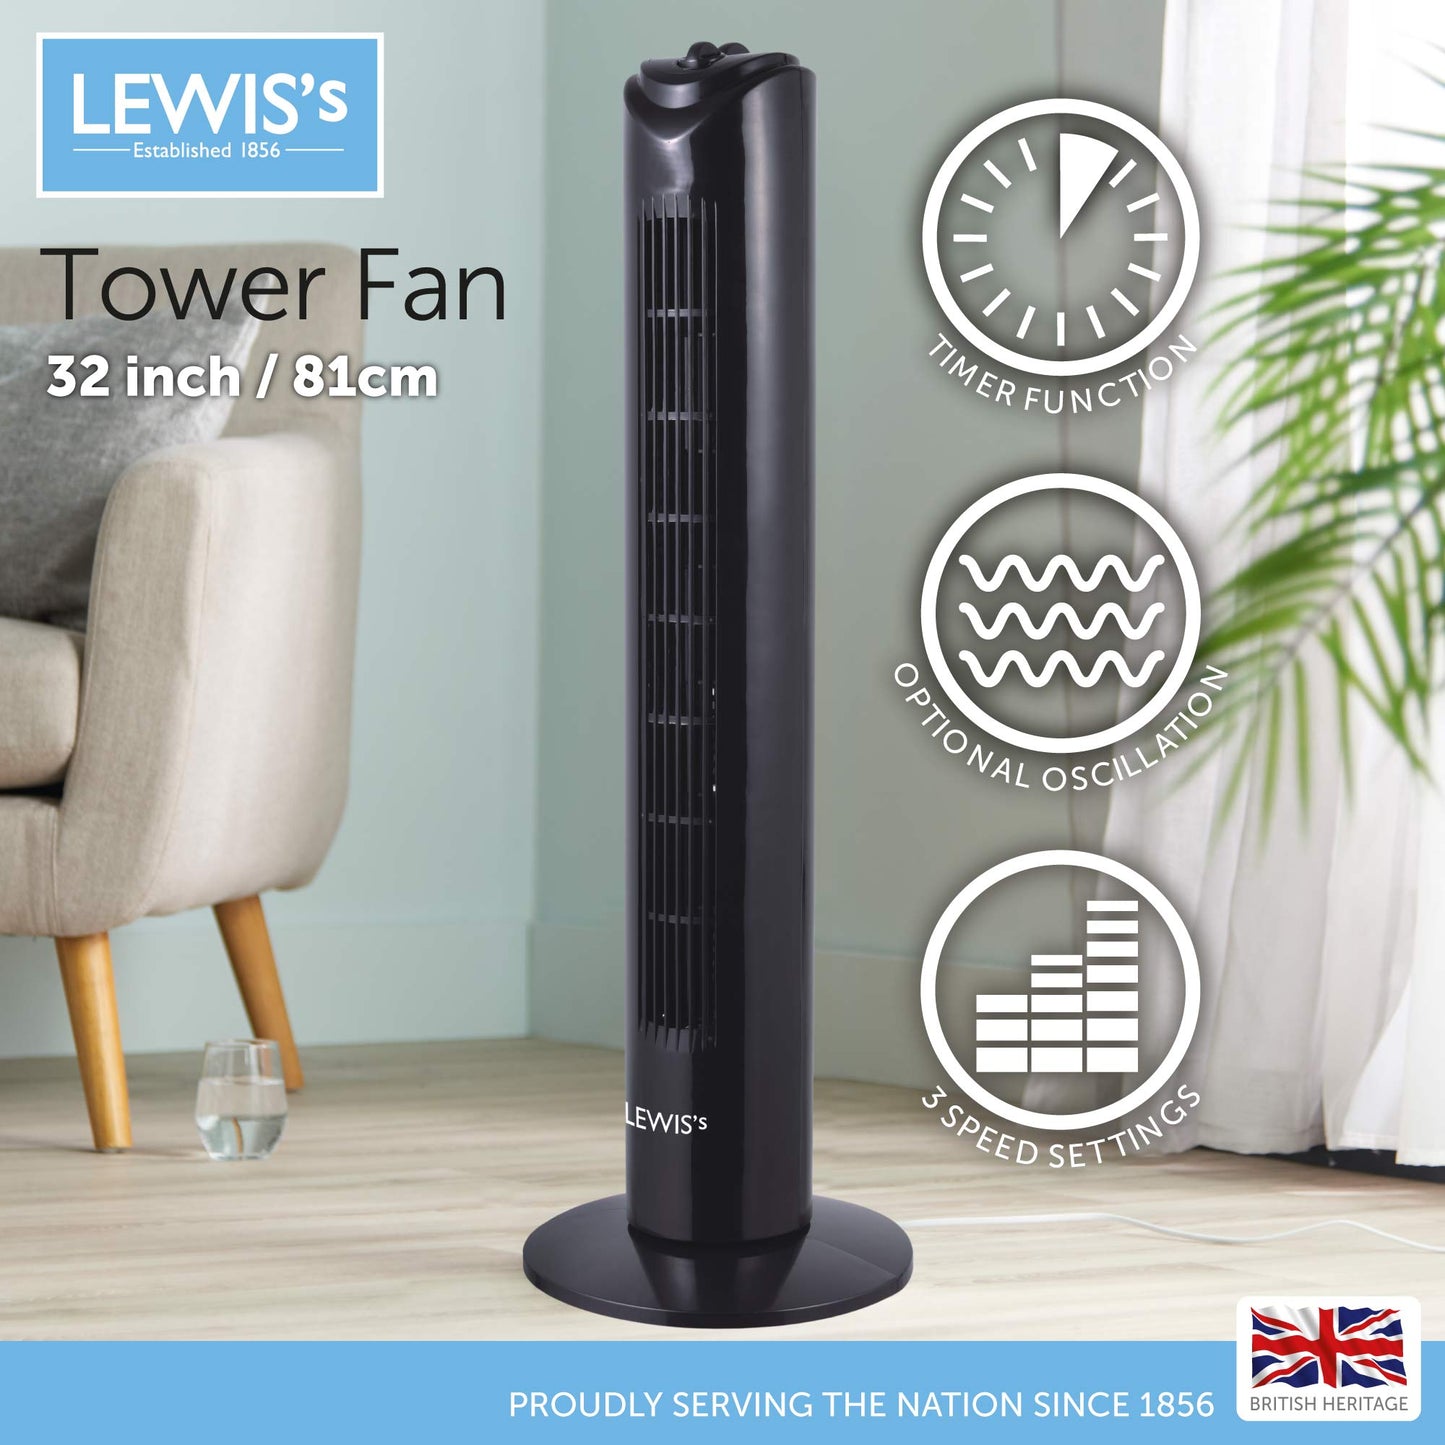 Lewis's 32 Inch Tower Fan - Black